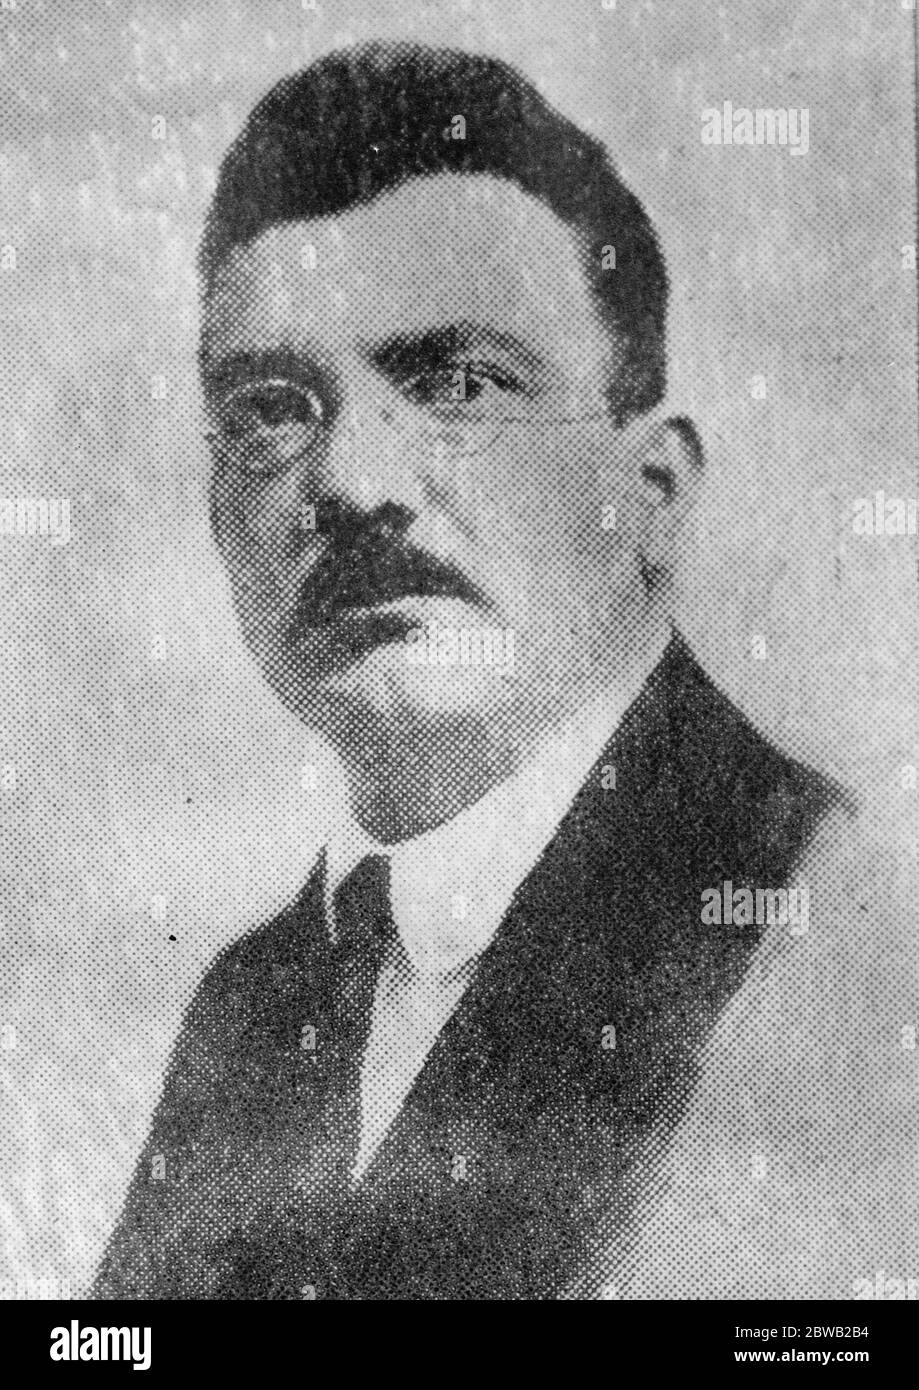 Bombe auf einen Minister geworfen . M Daskaloff, der bulgarische Innenminister, fuhr mit seinem Auto zum Außenministerium, als ihm eine Bombe zuwarf. Weder der Minister noch sonst jemand wurde verletzt. Der Angreifer entkam. 18 Dezember 1922 Stockfoto